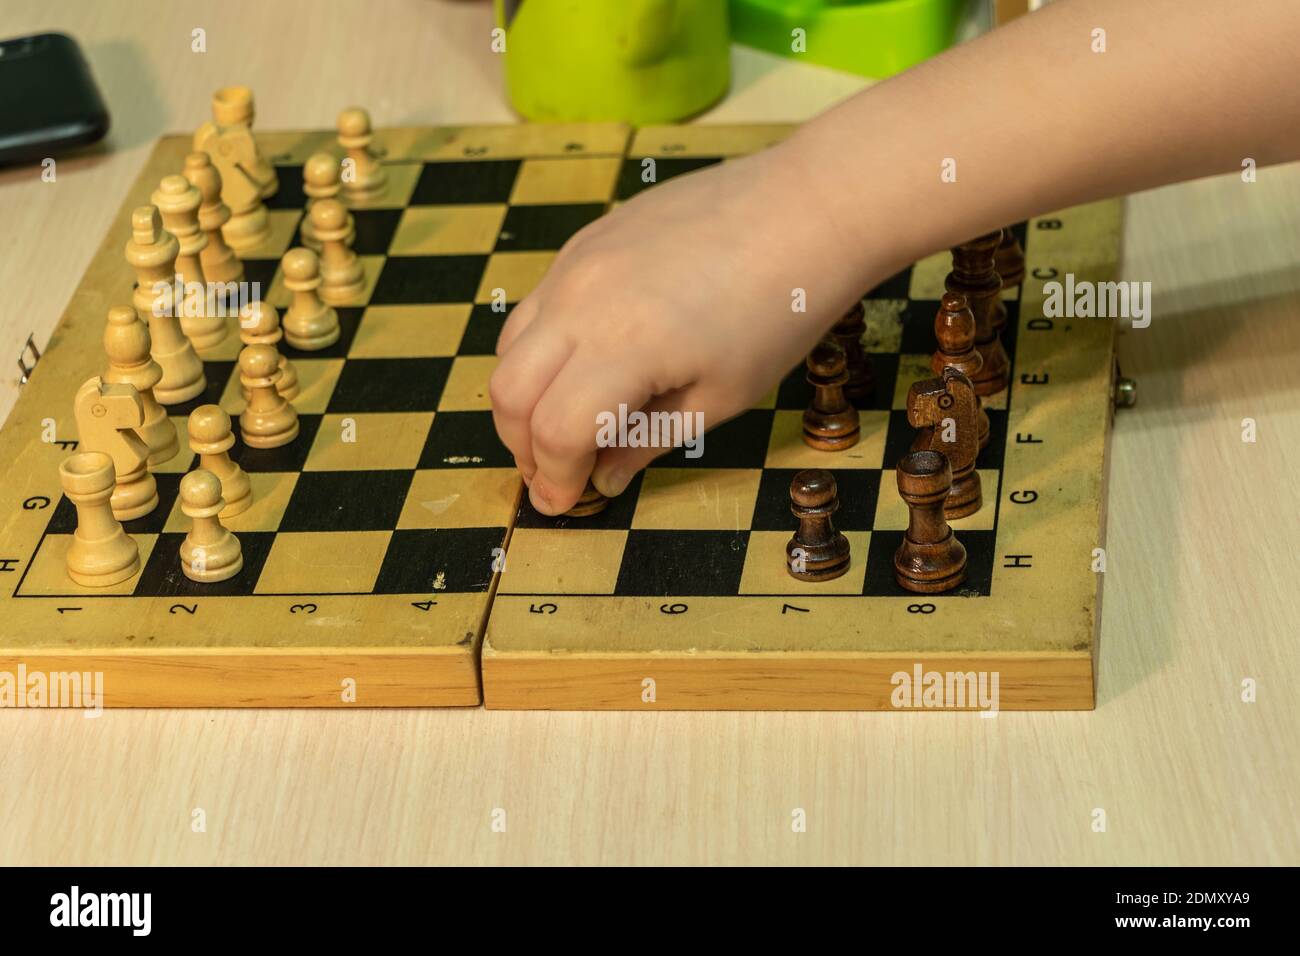 Die Hand des Kindes hält ein Schachstück auf einem Schachbrett. Foto aufgenommen in Tscheljabinsk, Russland. Stockfoto